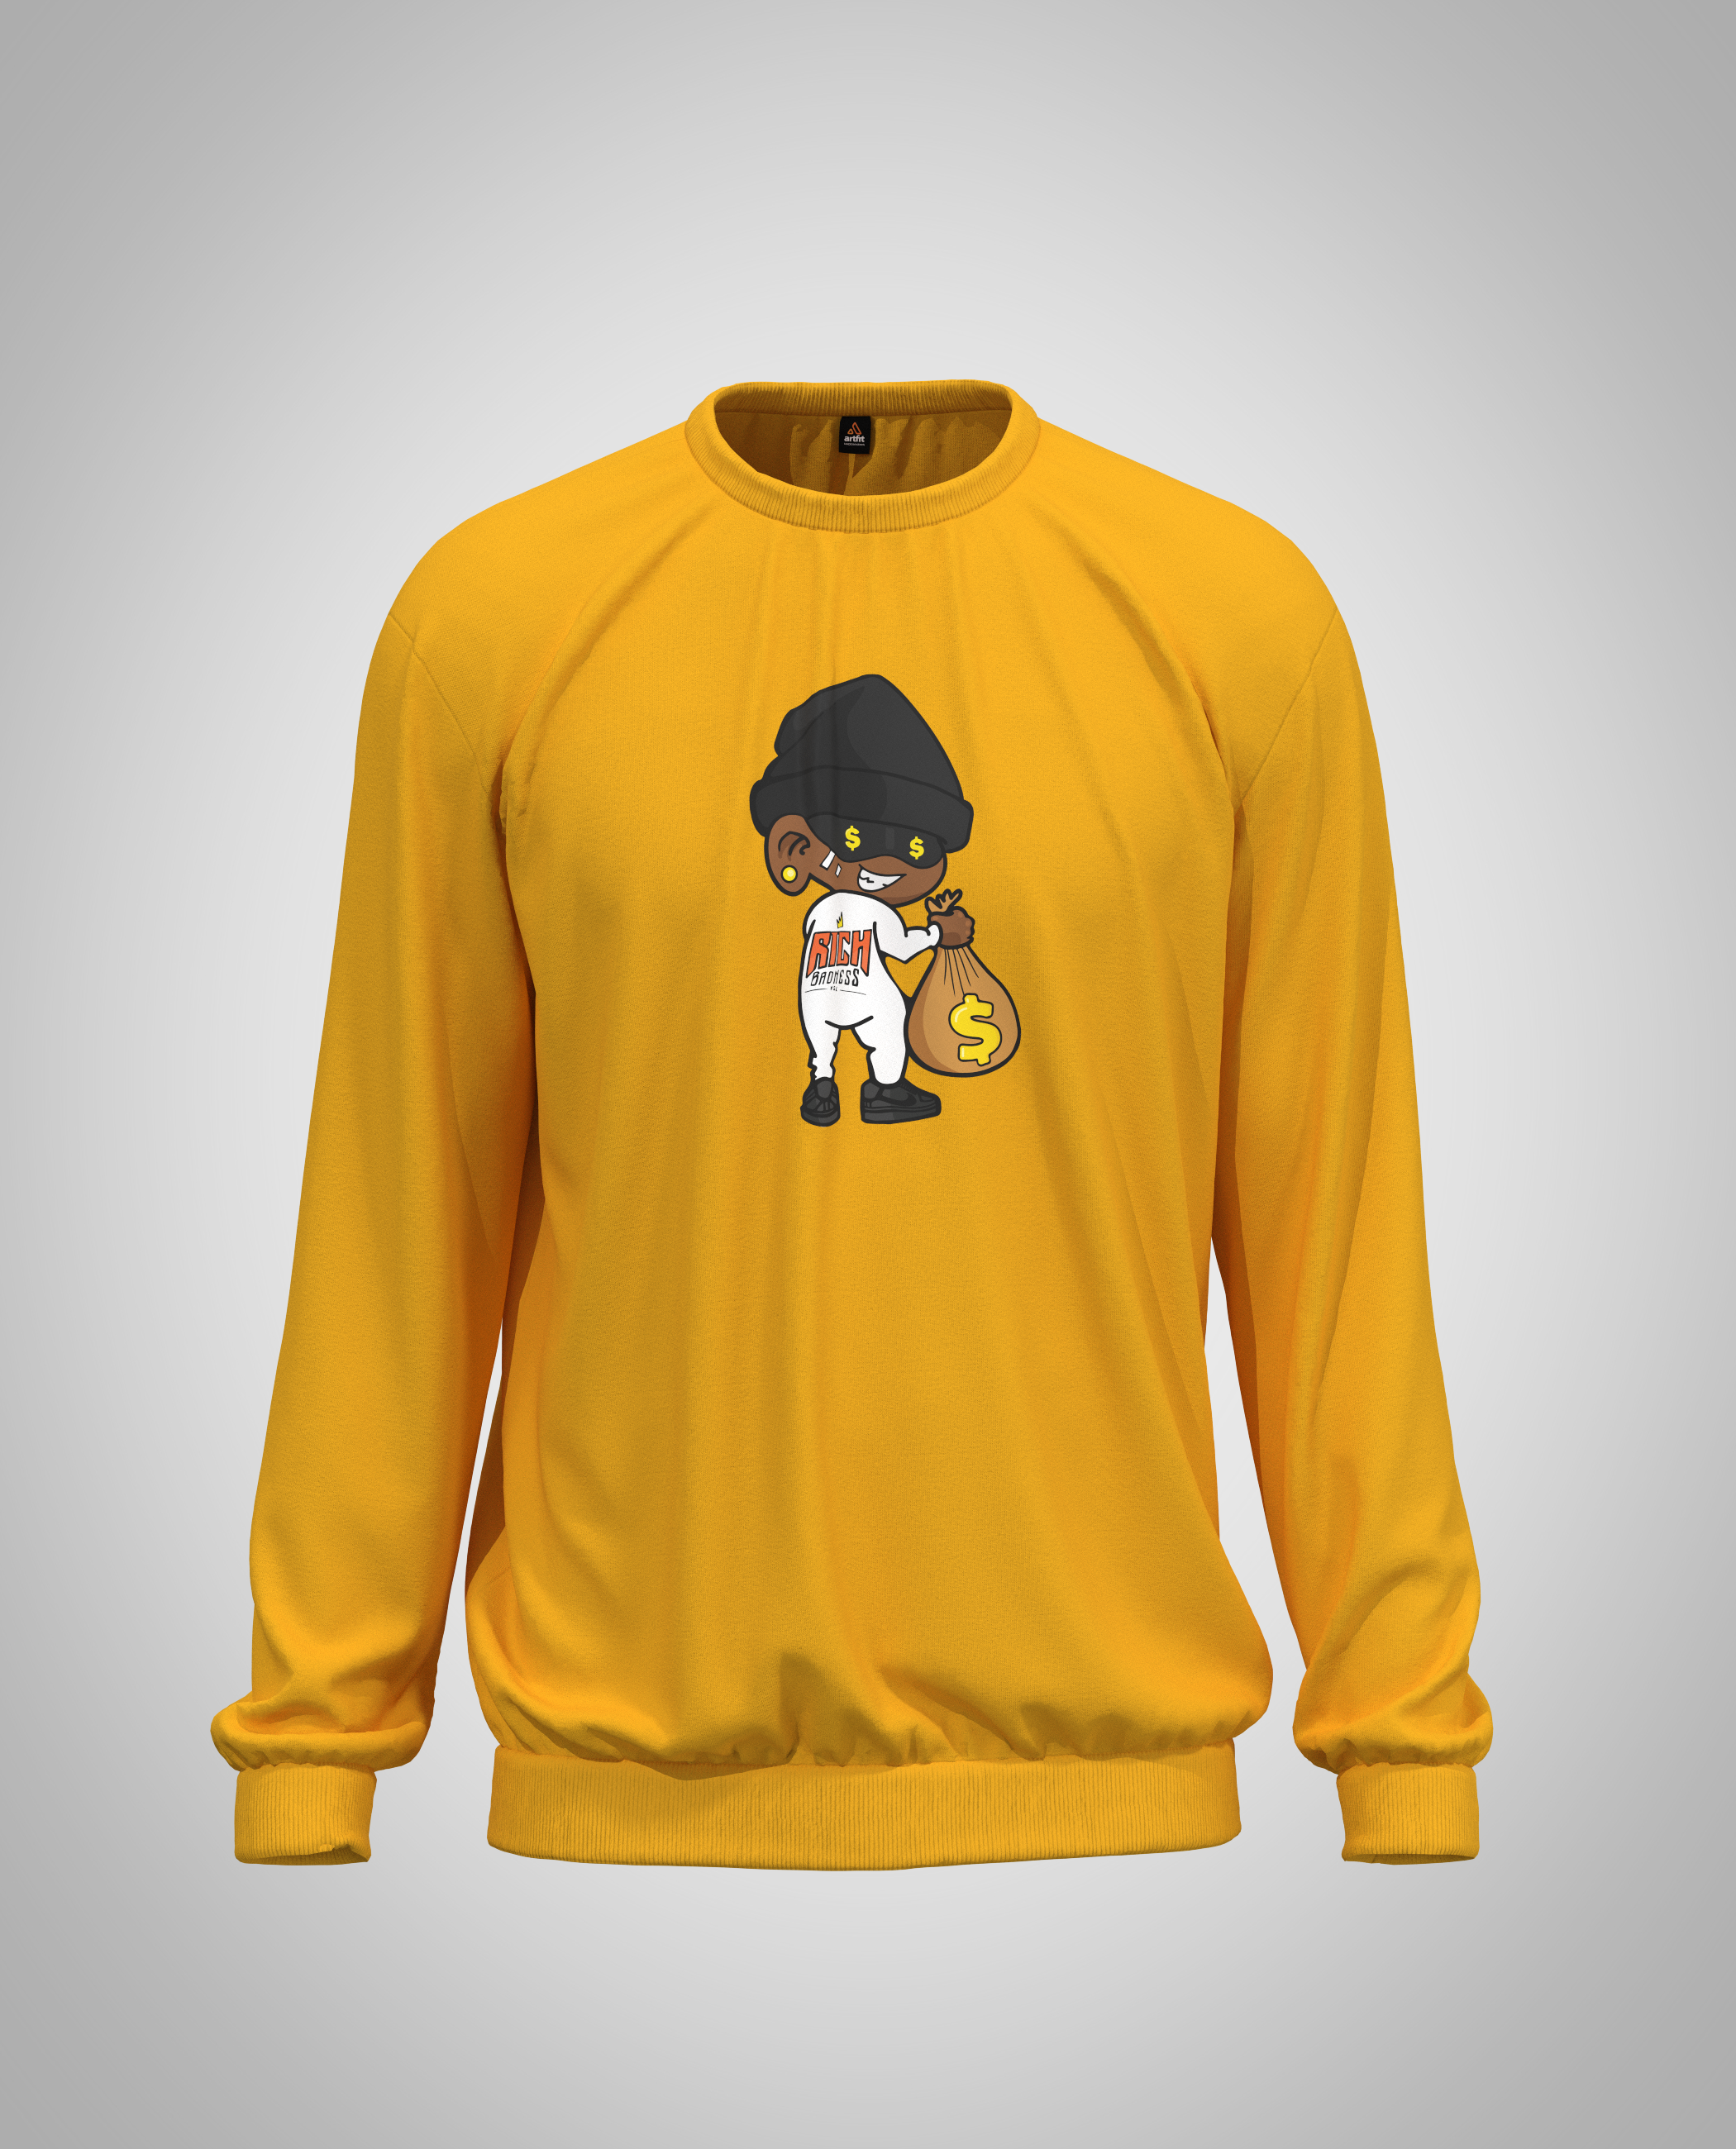 Kids Mustard Yellow Sweatshirt(Heavy Fabric)